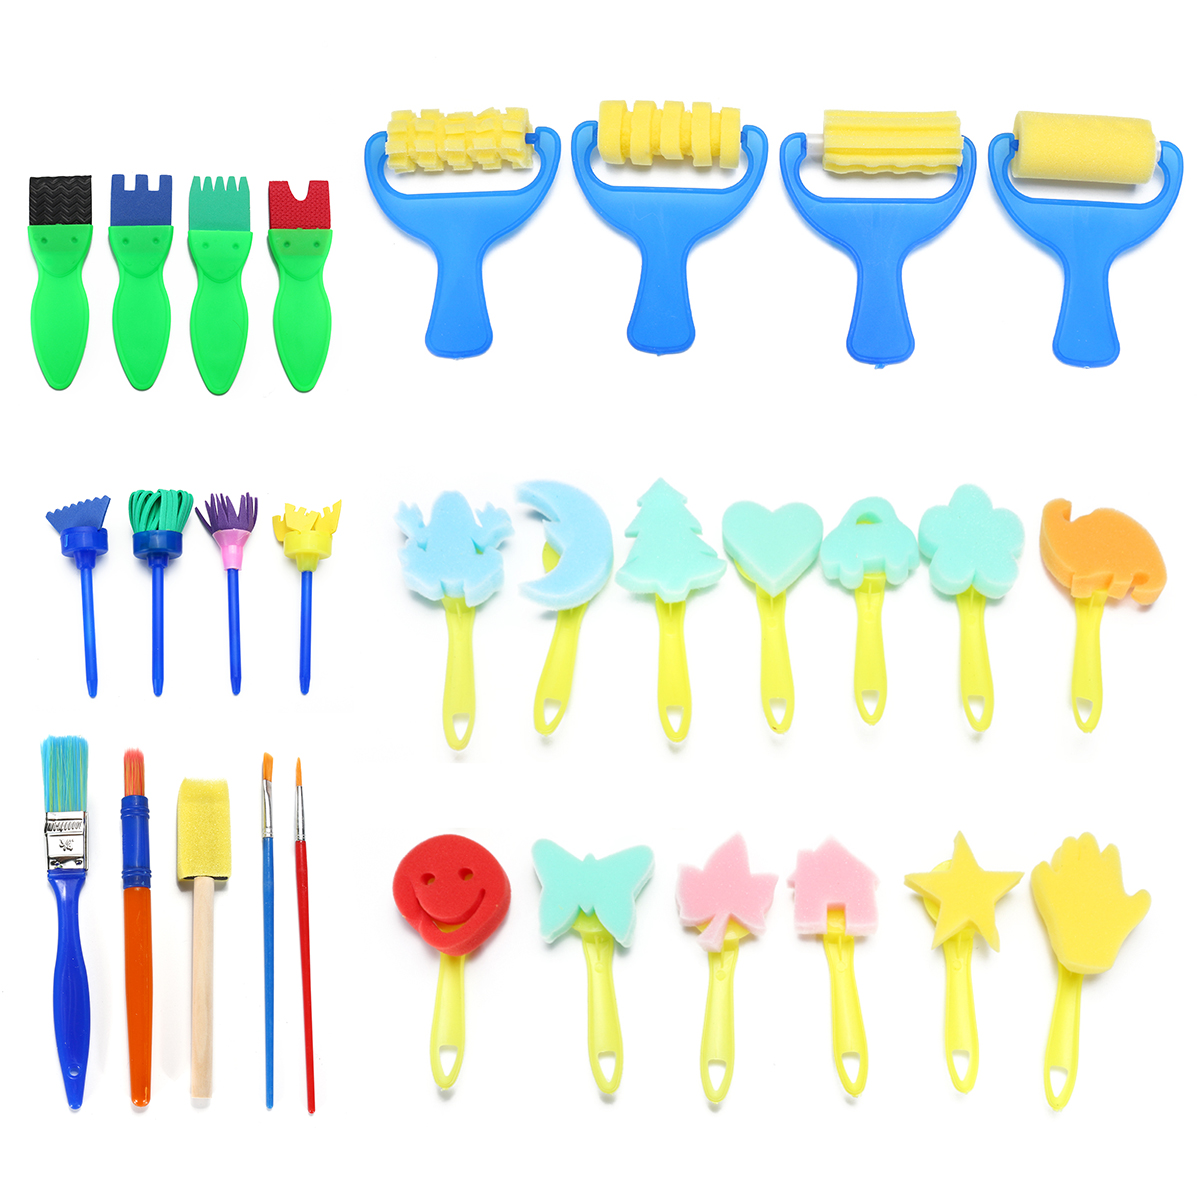 30pcs-Child-Paint-Roller-DIY-Painting-Toys-Sponge-Brush-Kit-Set-Graffiti-Drawing-Tools-for-Kids-Earl-1836475-7